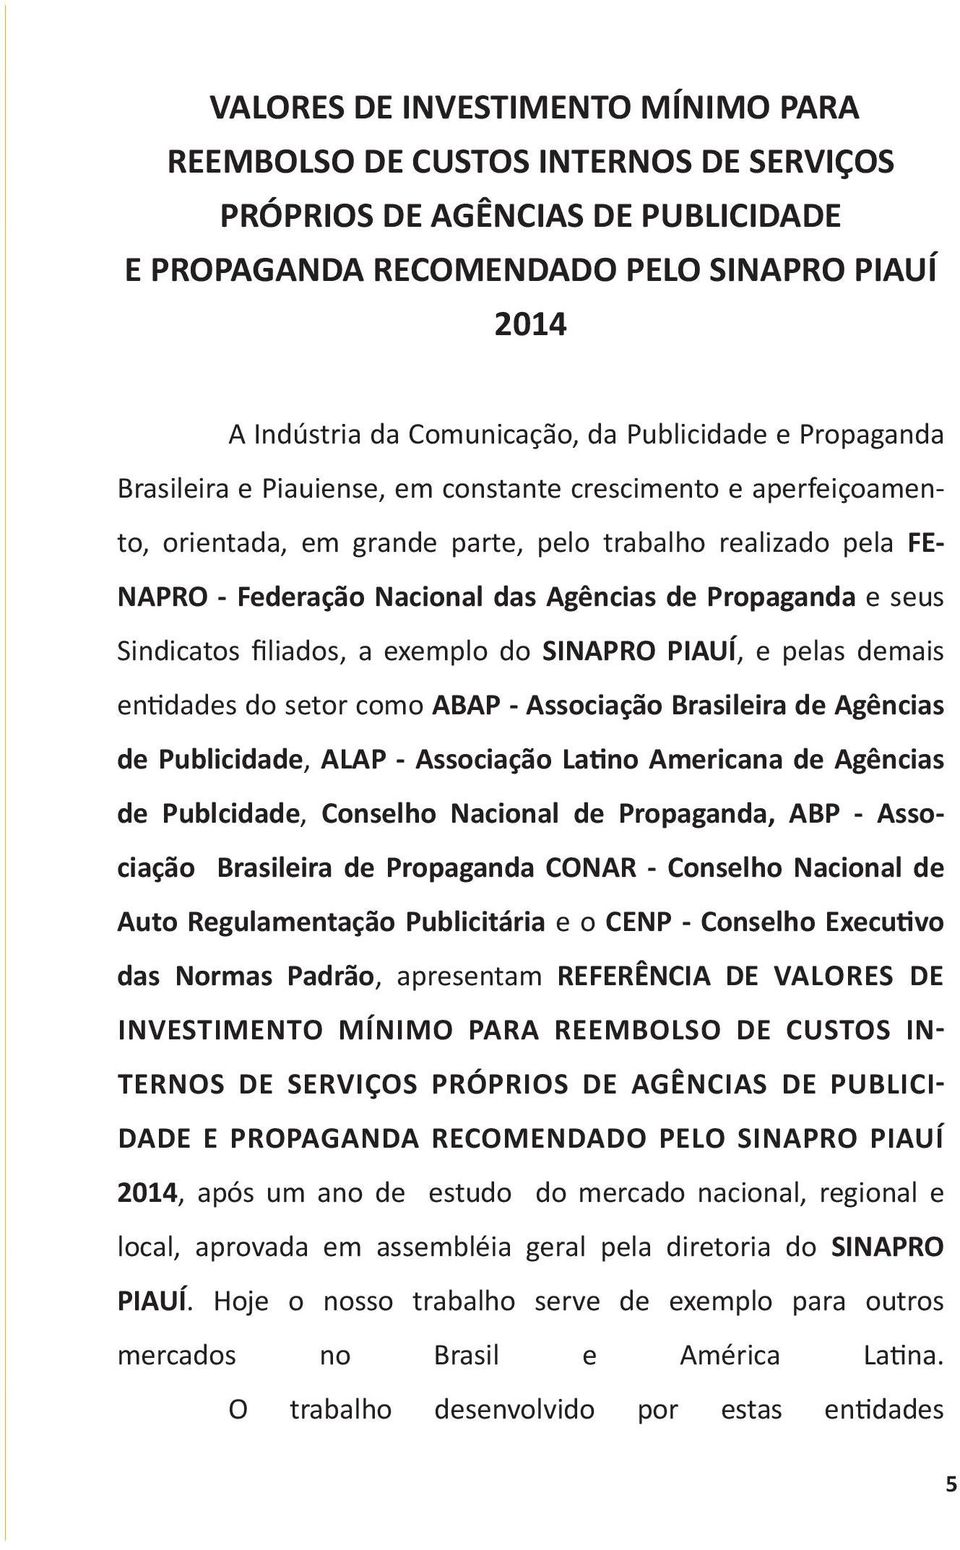 Propaganda e seus Sindicatos filiados, a exemplo do SINAPRO PIAUÍ, e pelas demais entidades do setor como ABAP - Associação Brasileira de Agências de Publicidade, ALAP - Associação Latino Americana